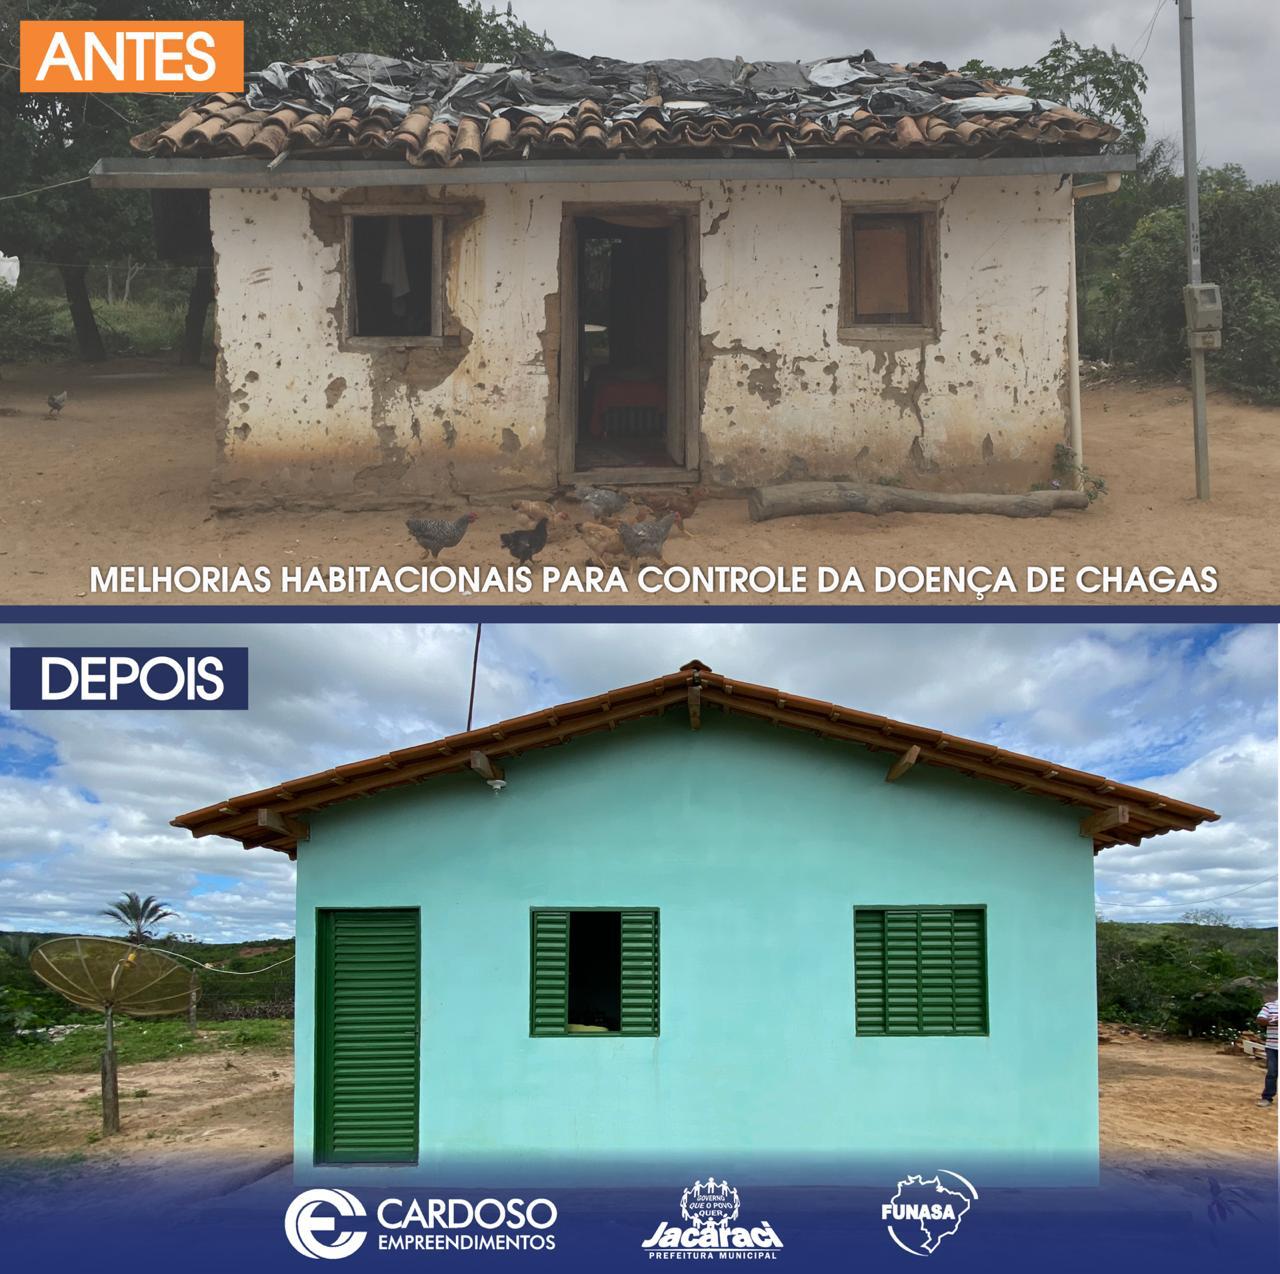 Implantação de melhorias habitacionais para controle de doença das Chagas no município de Jacaraci-Ba.